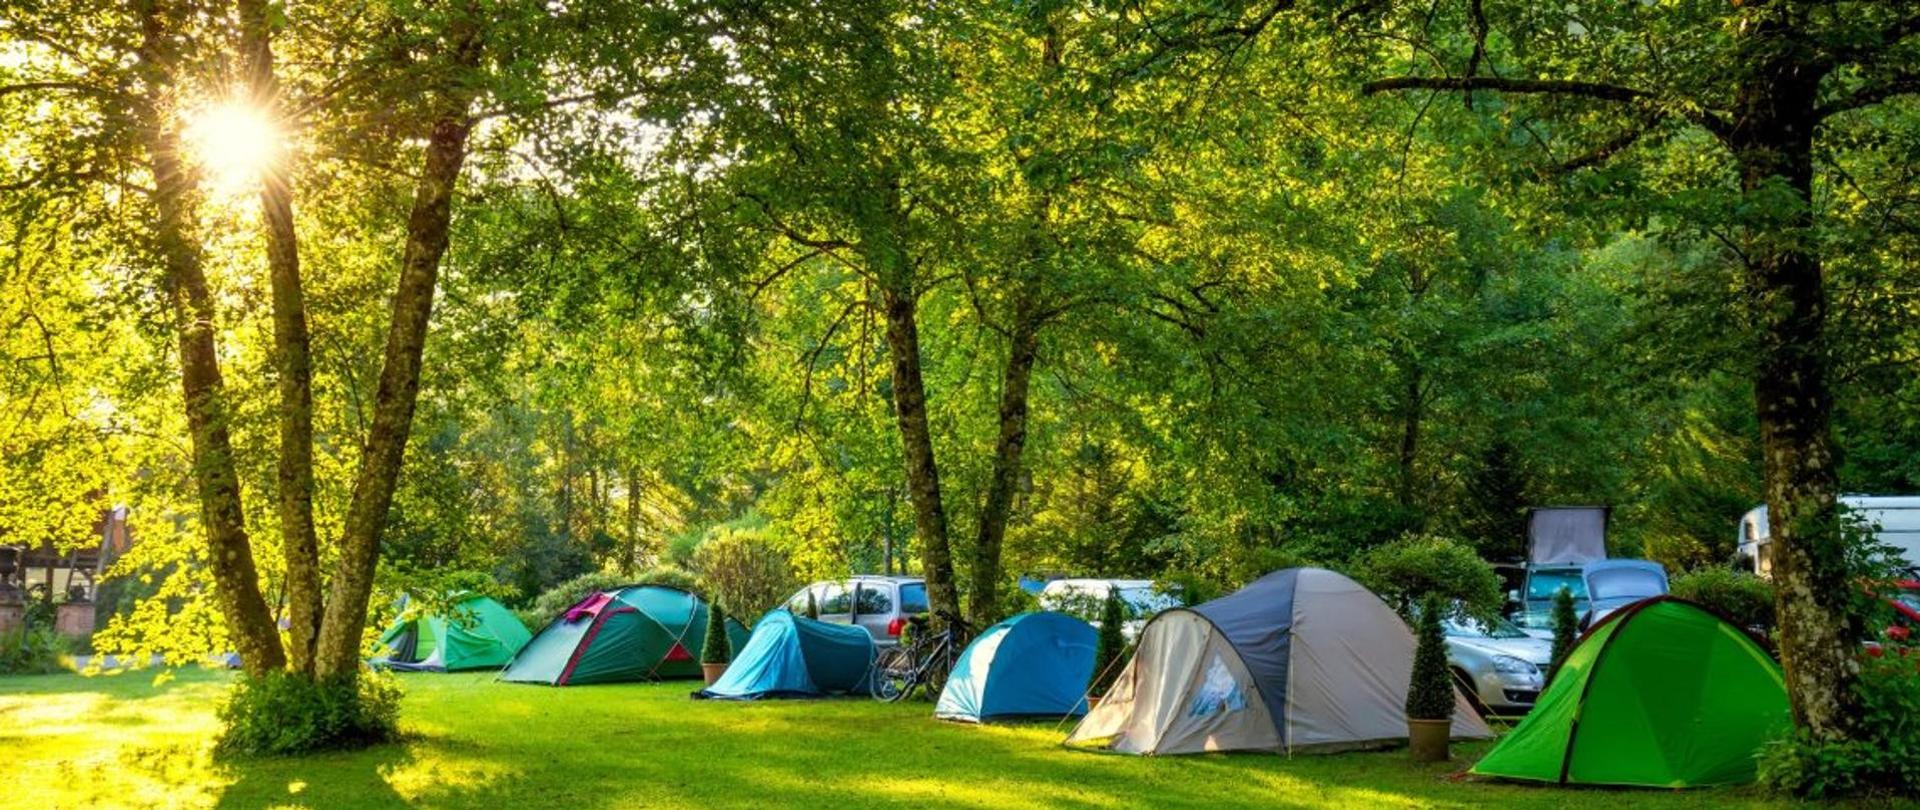 Na zdjęciu znajdują się namioty na polu namiotowym.